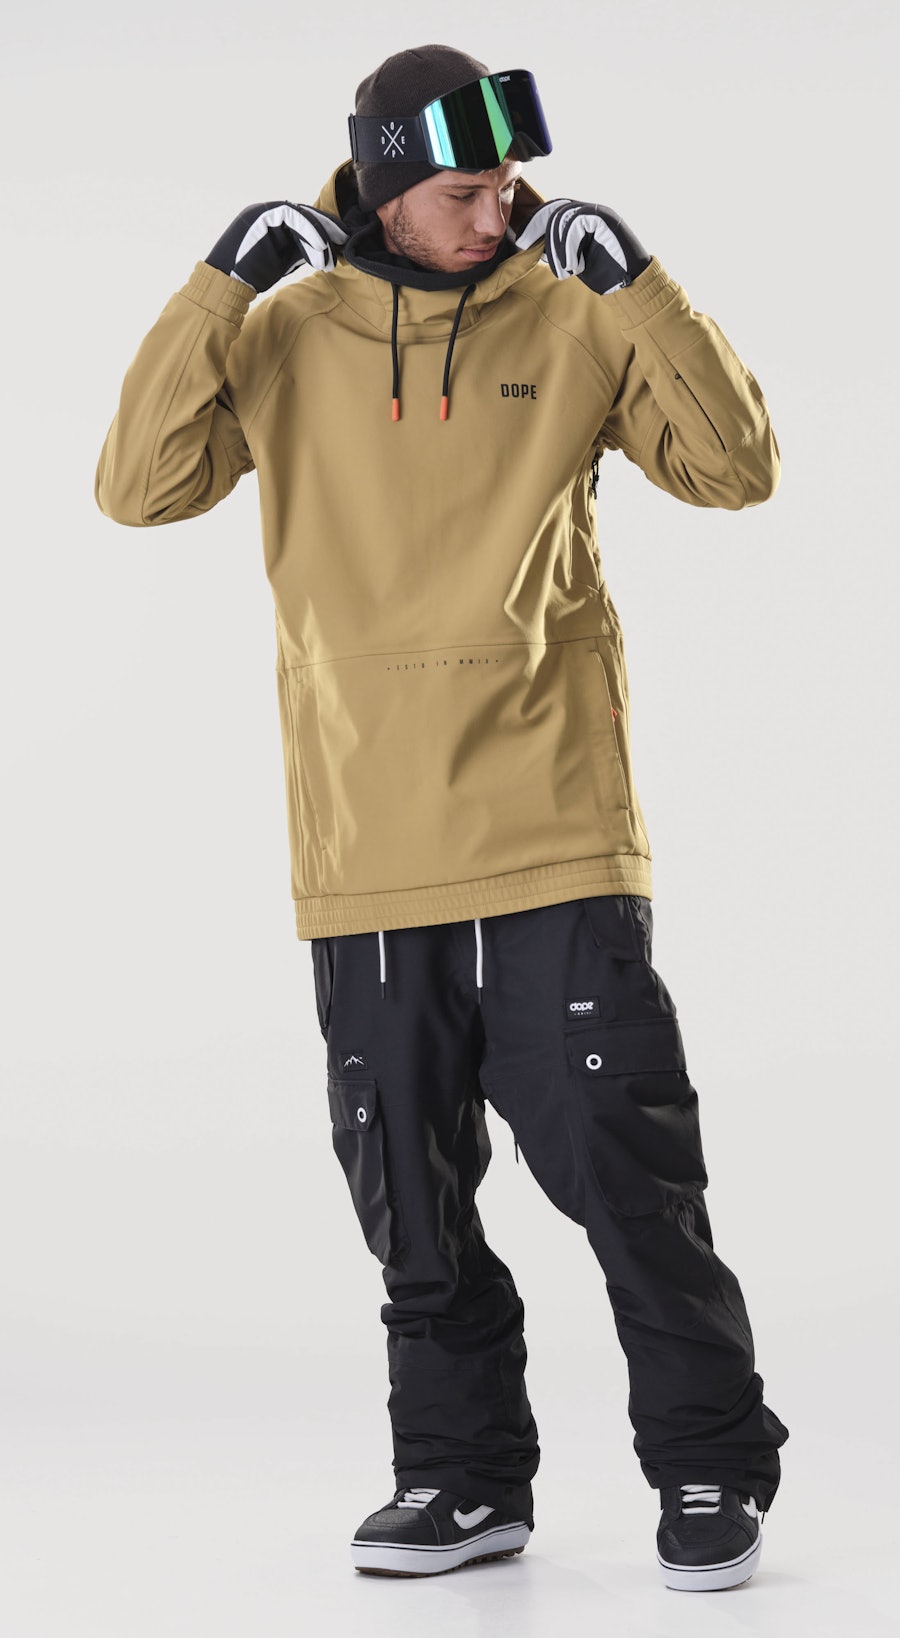 Rogue Gold Snowboardový Outfit Pánské Multi